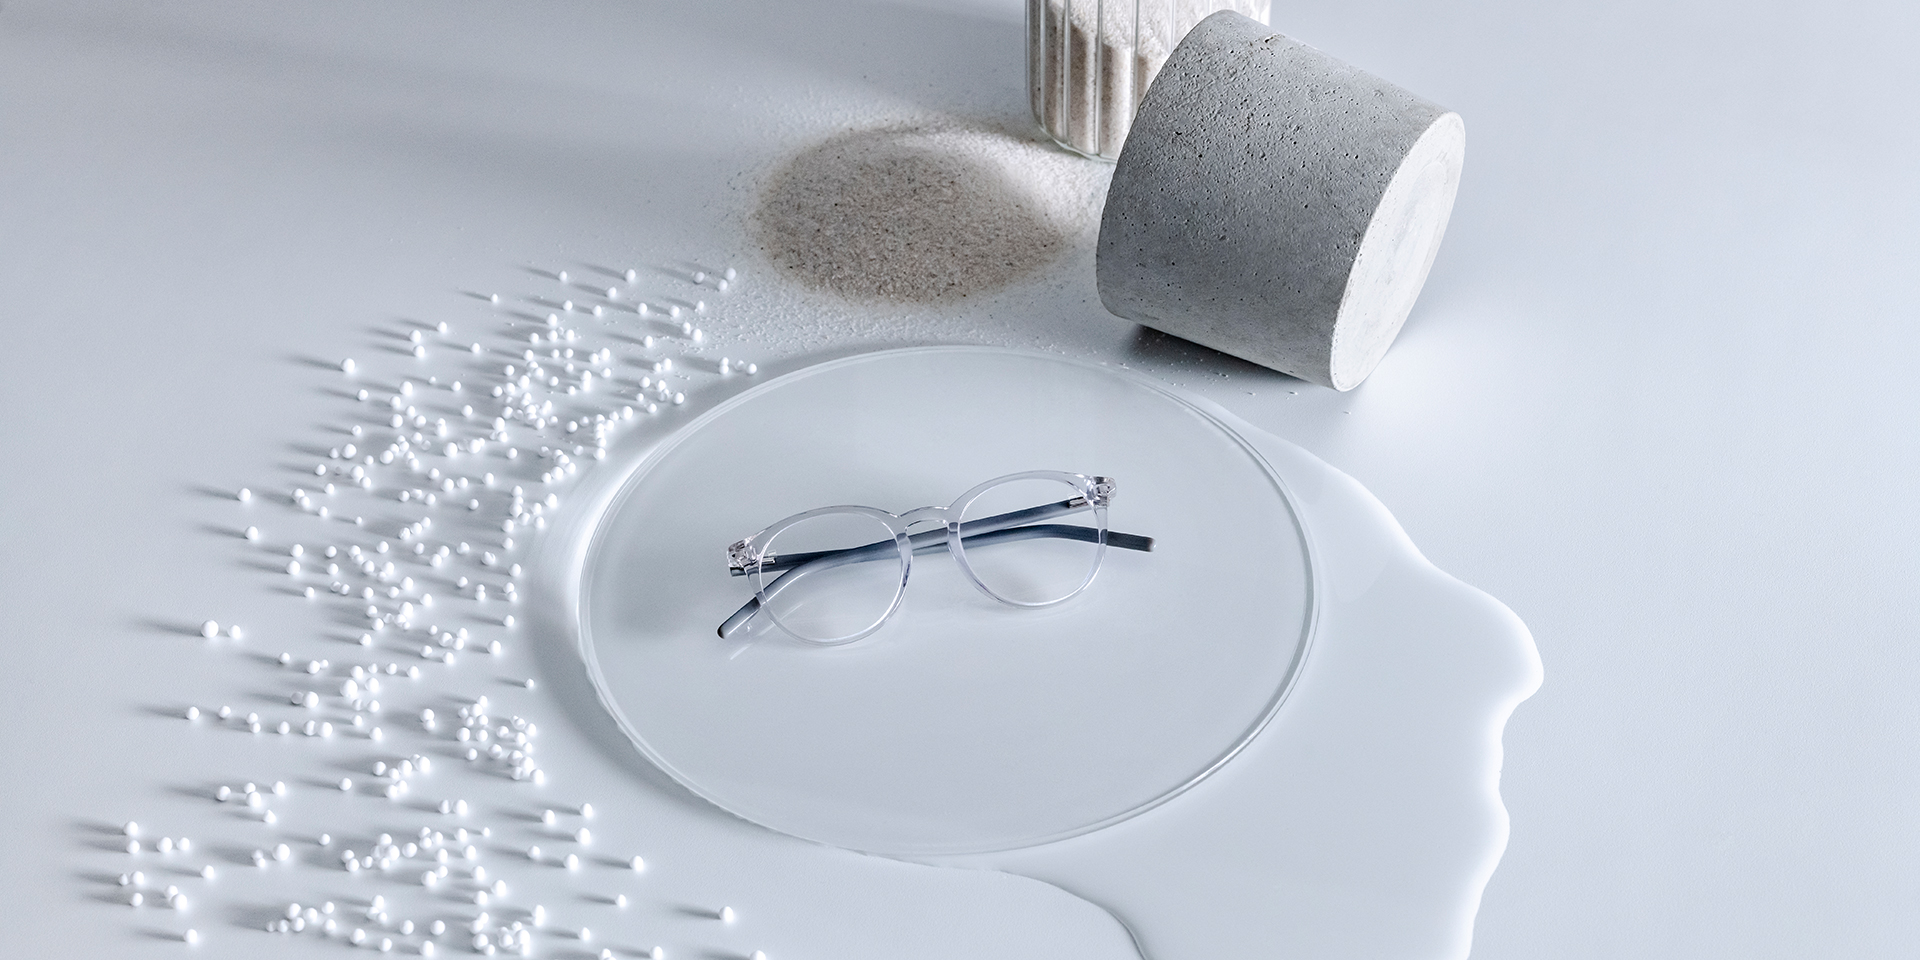 듀라비전® 코팅이 적용된 자이스 안경 렌즈가 물, 모래, 구슬, 돌로 둘러싸인 유리 받침대 위에 놓여 있다.